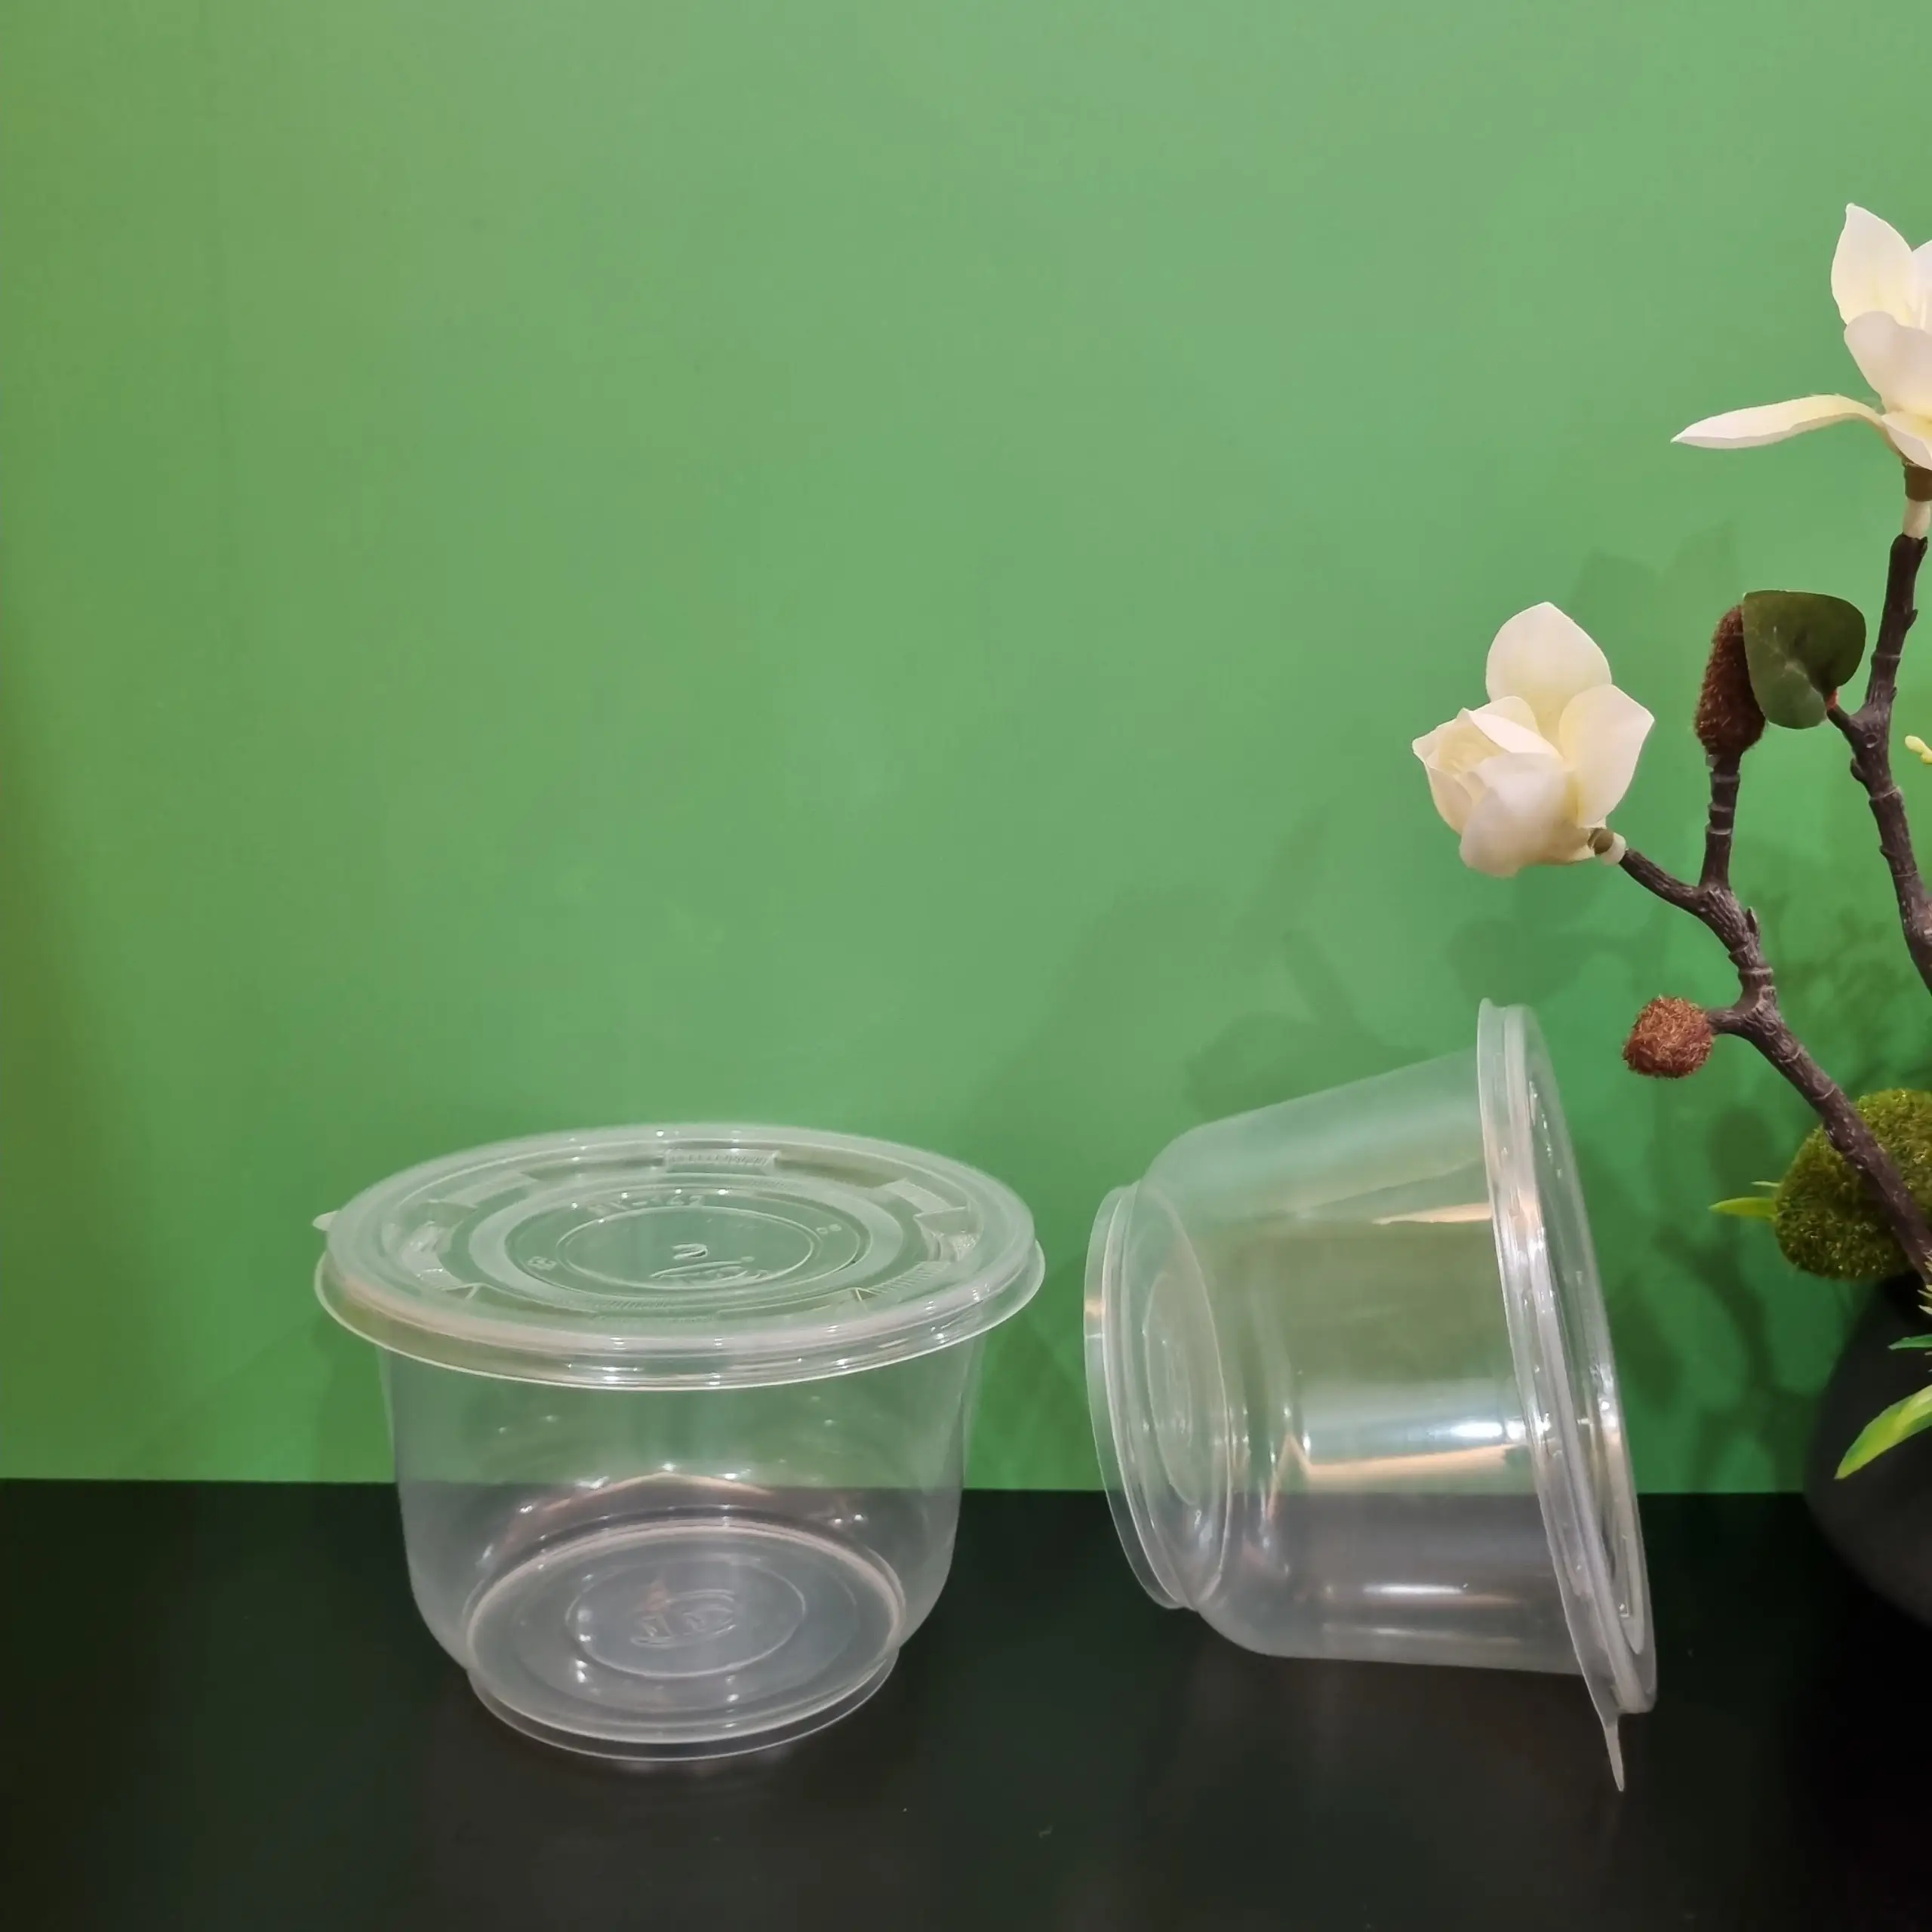 제조사 1000ml 둥근 모양 PP 플라스틱 식품 용기 뚜껑 테이크 아웃 포장 상자 투명 투명 전자 레인지 안전